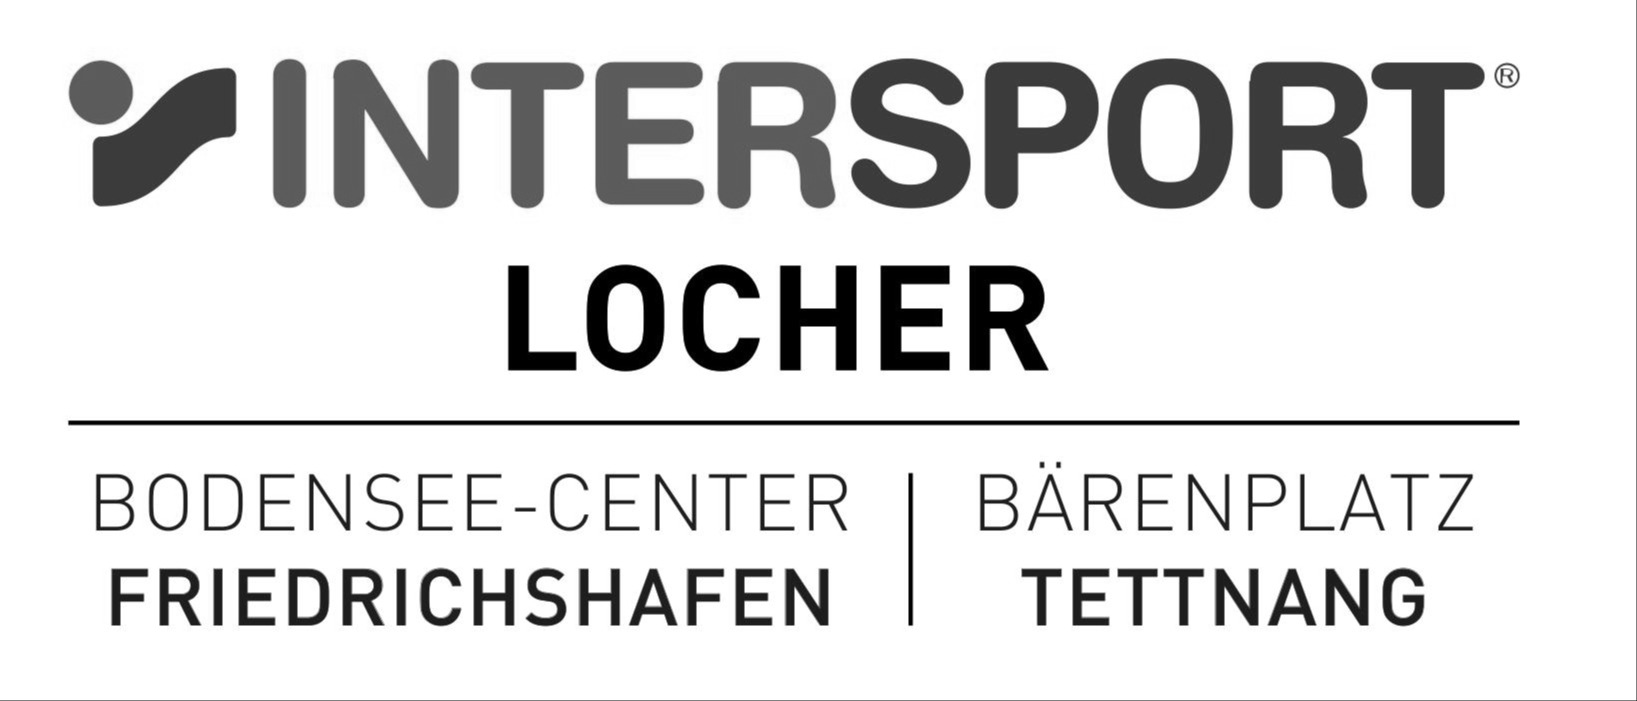 Intersport Locher_sw.jpg